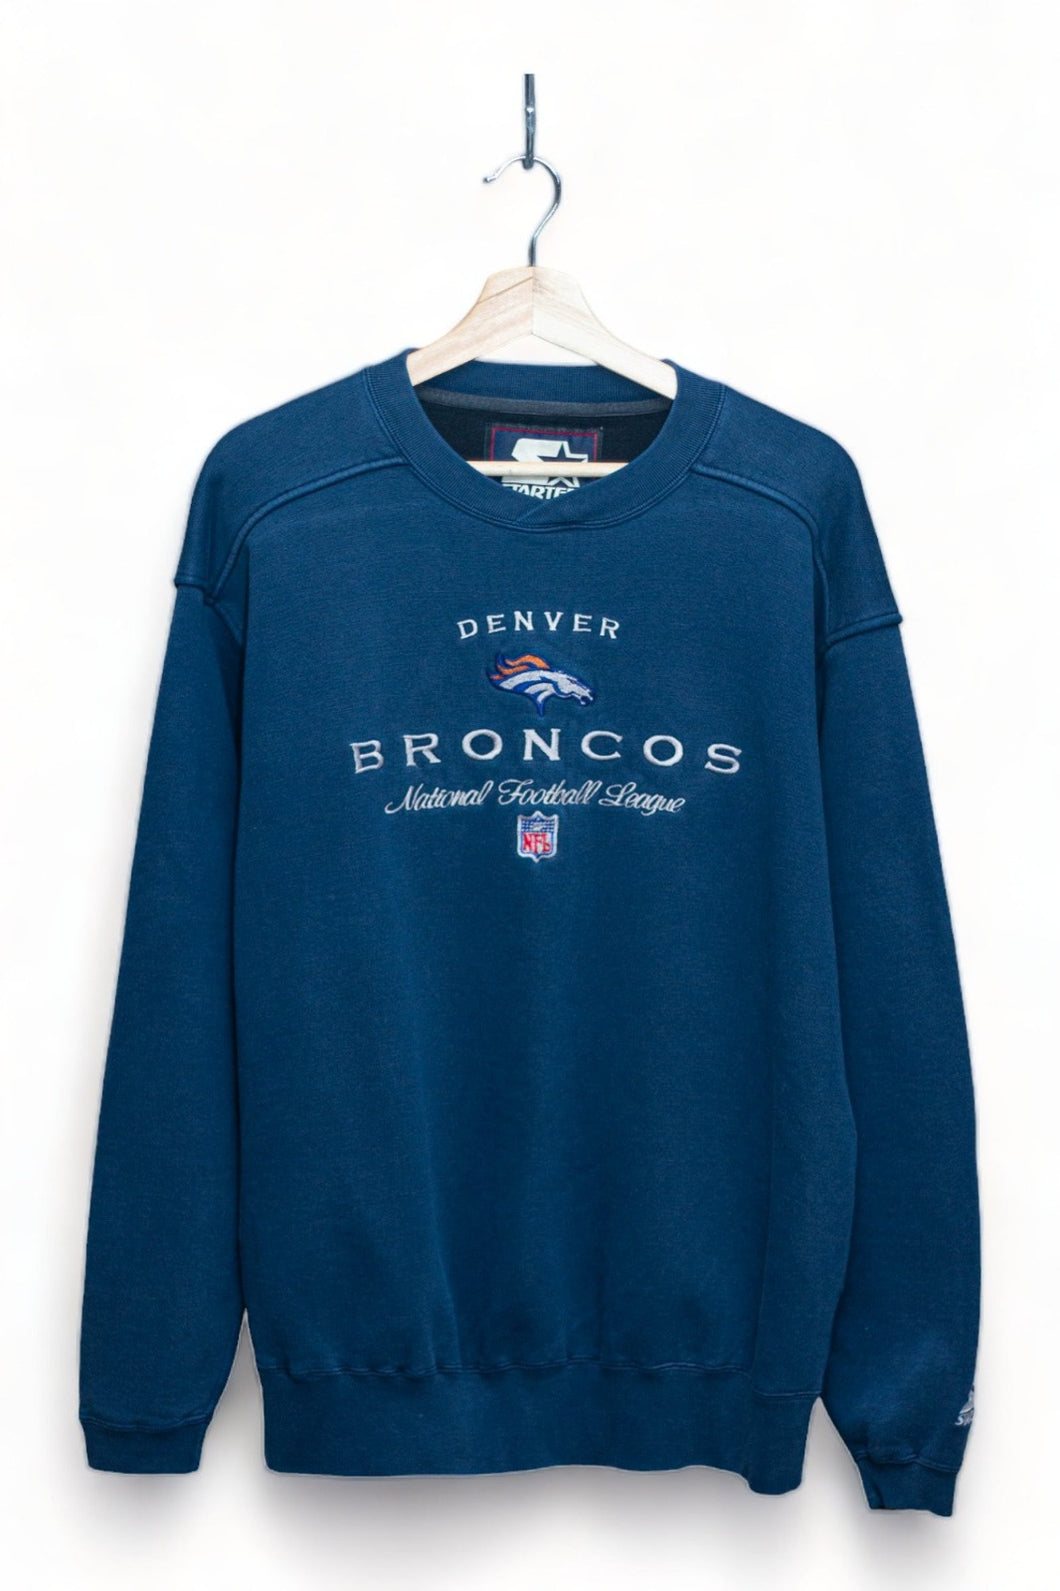 Denver Broncos - Embroidered Starter Sweater (M)